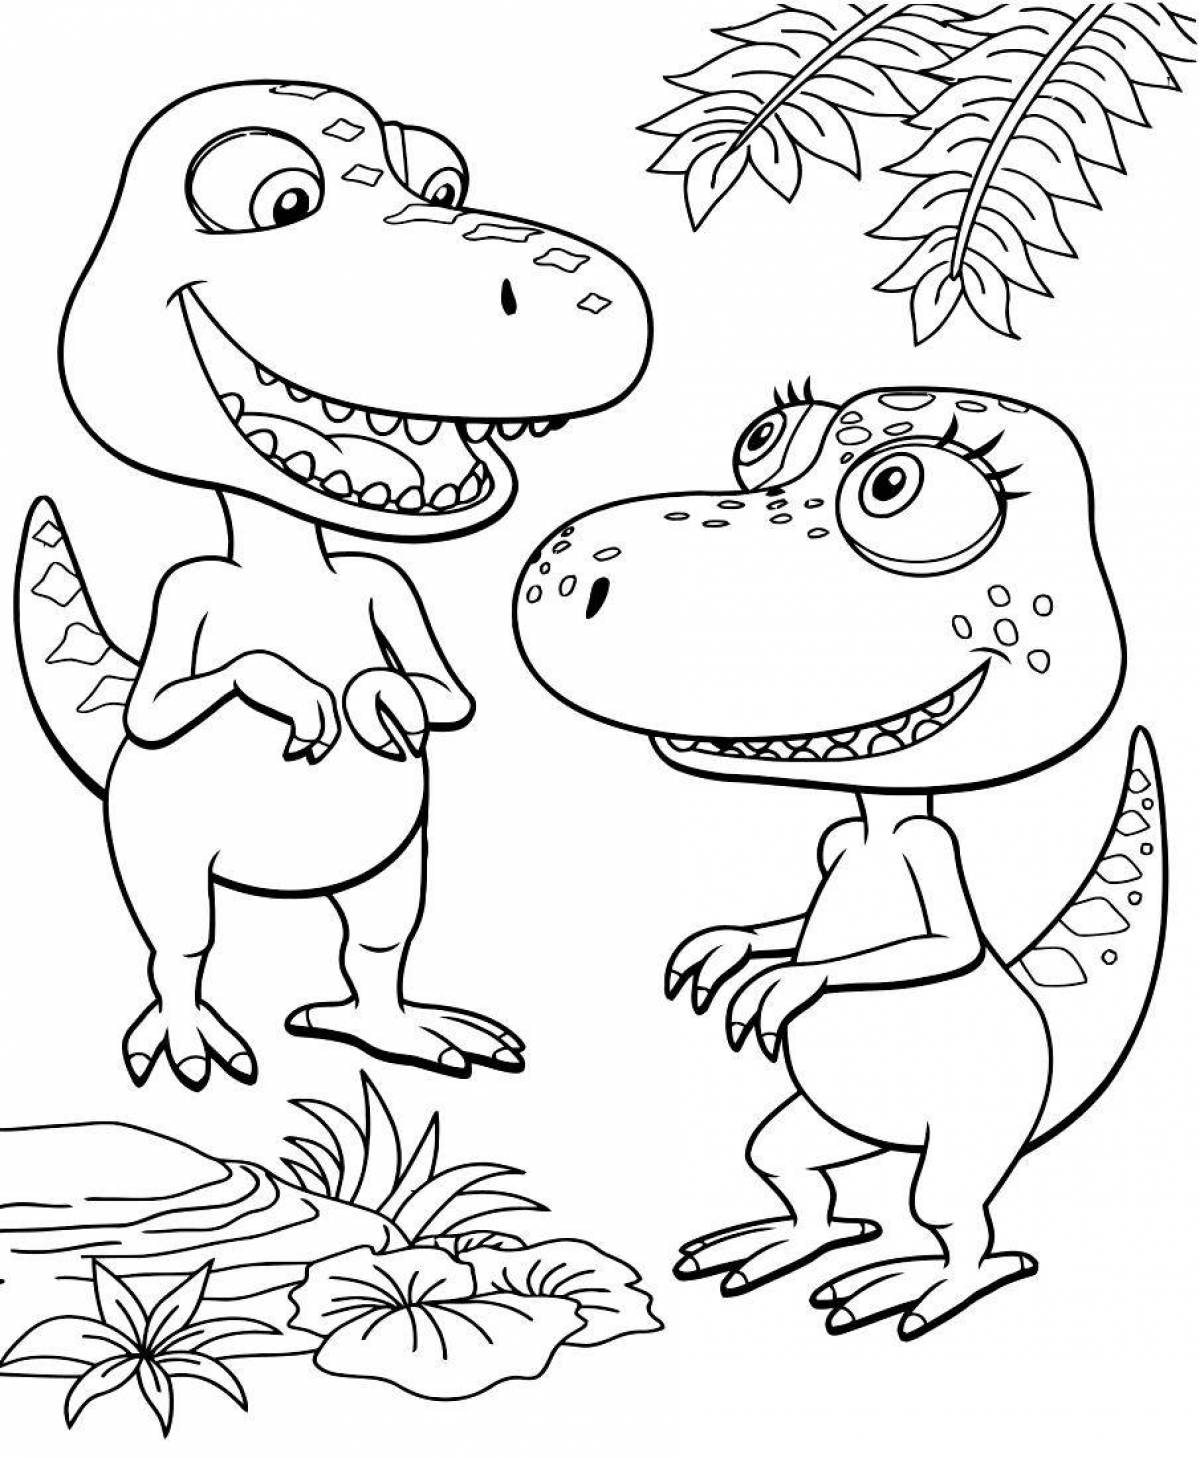 Wonderful tarbosaurus coloring book